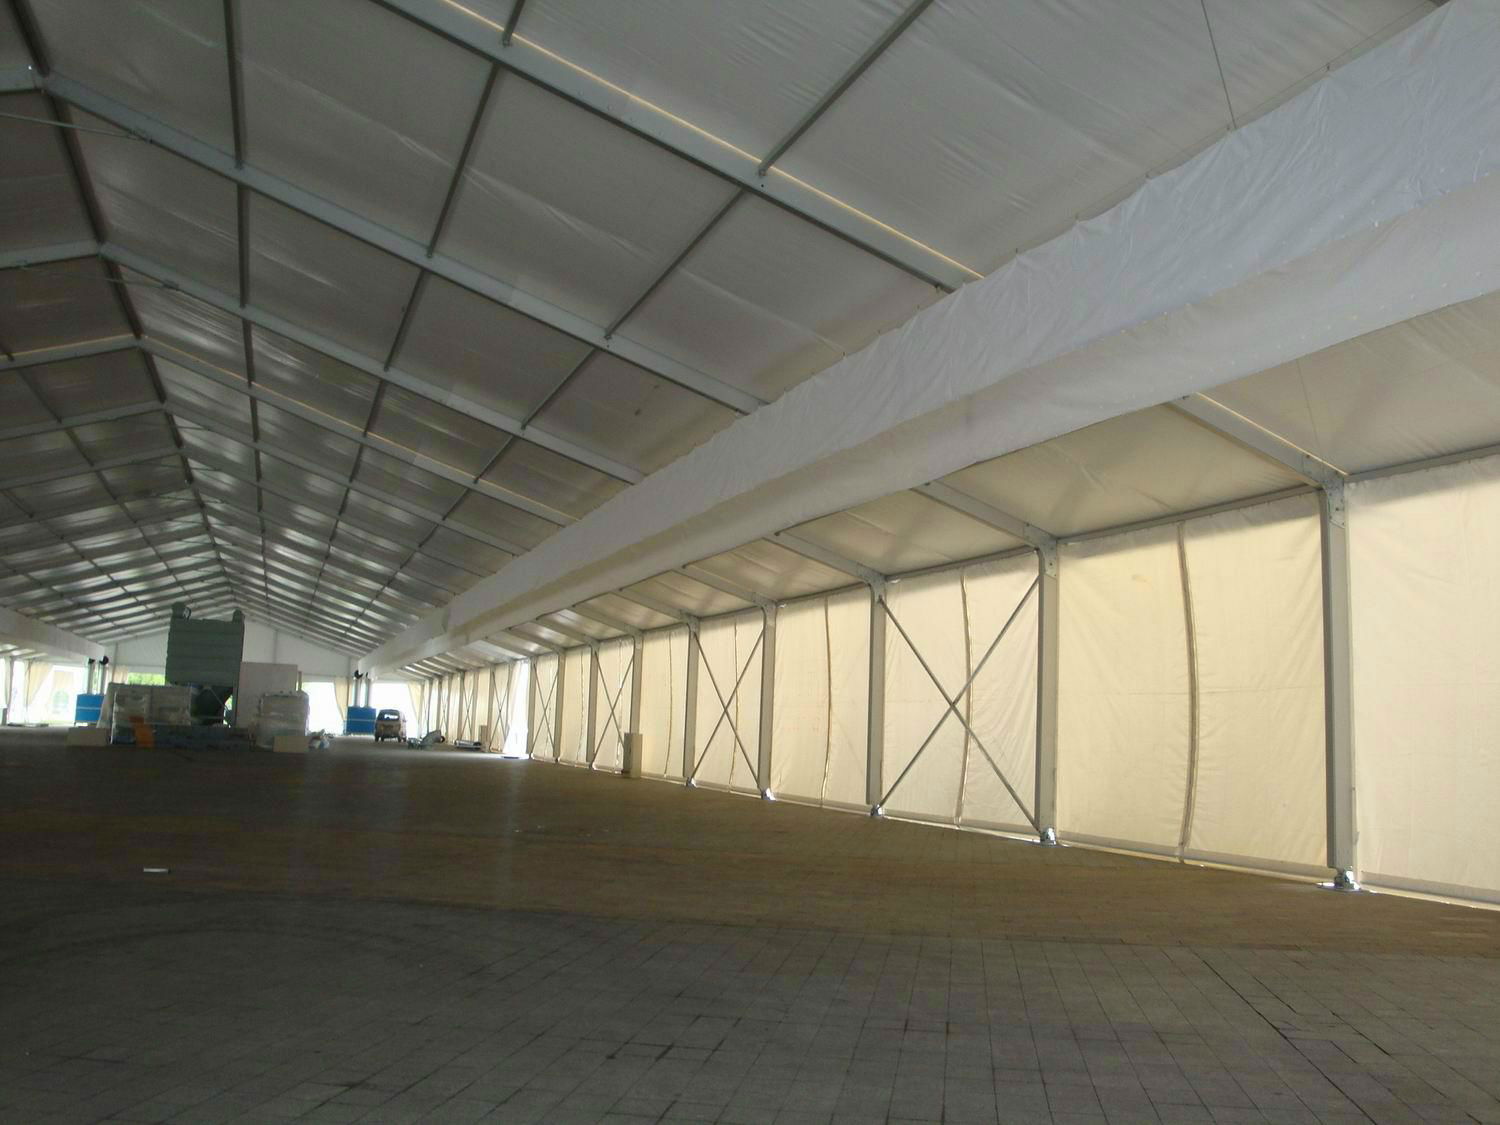 Large exhibition tent exhibition tent business tent 2